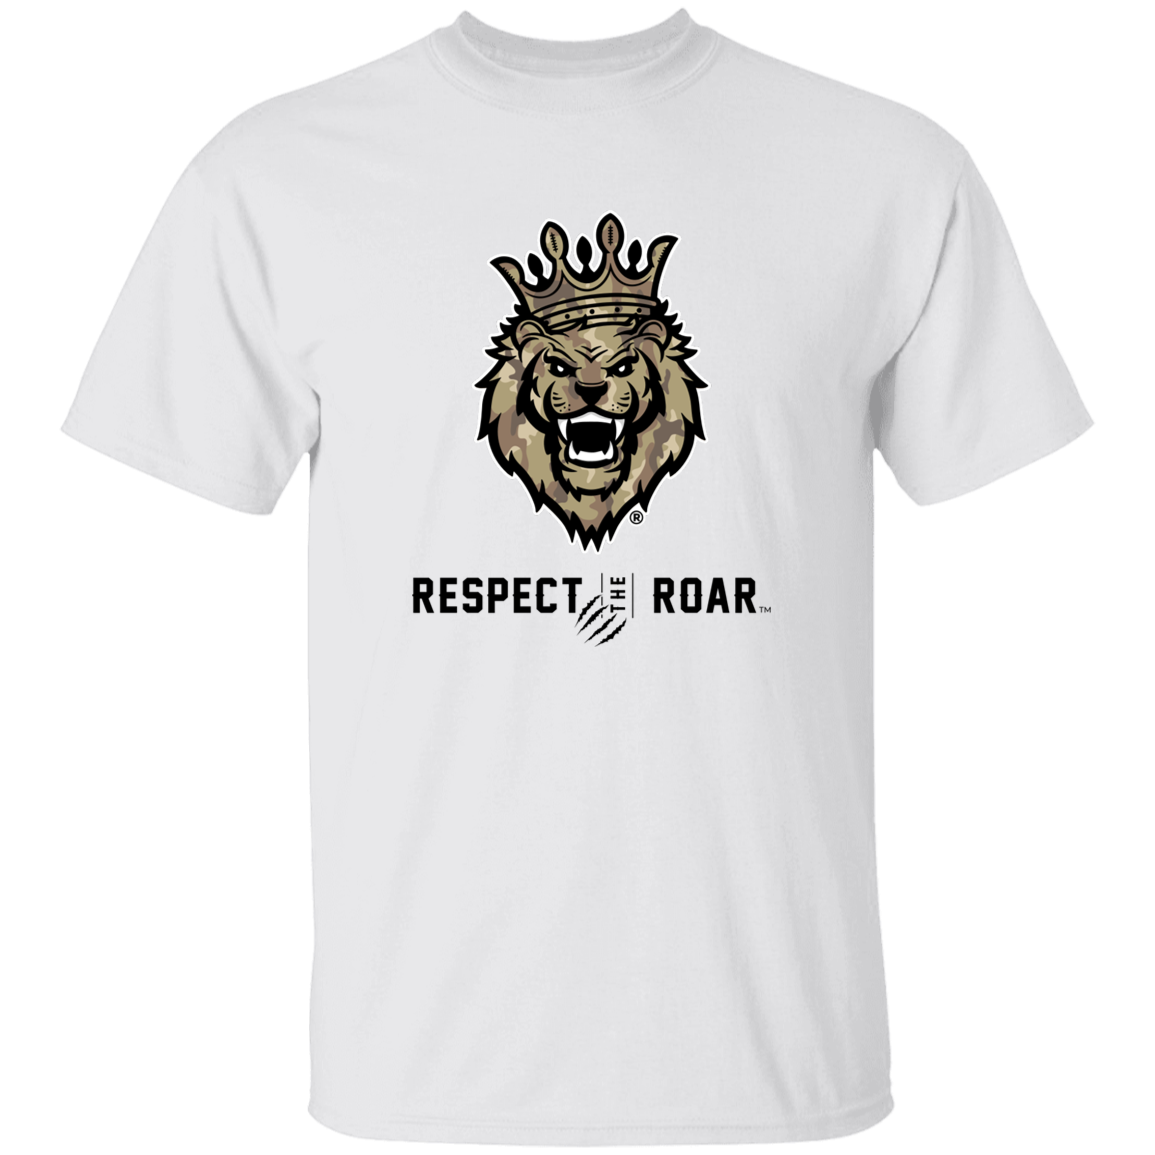 Respect The Roar® (Tan) Men's T-Shirt